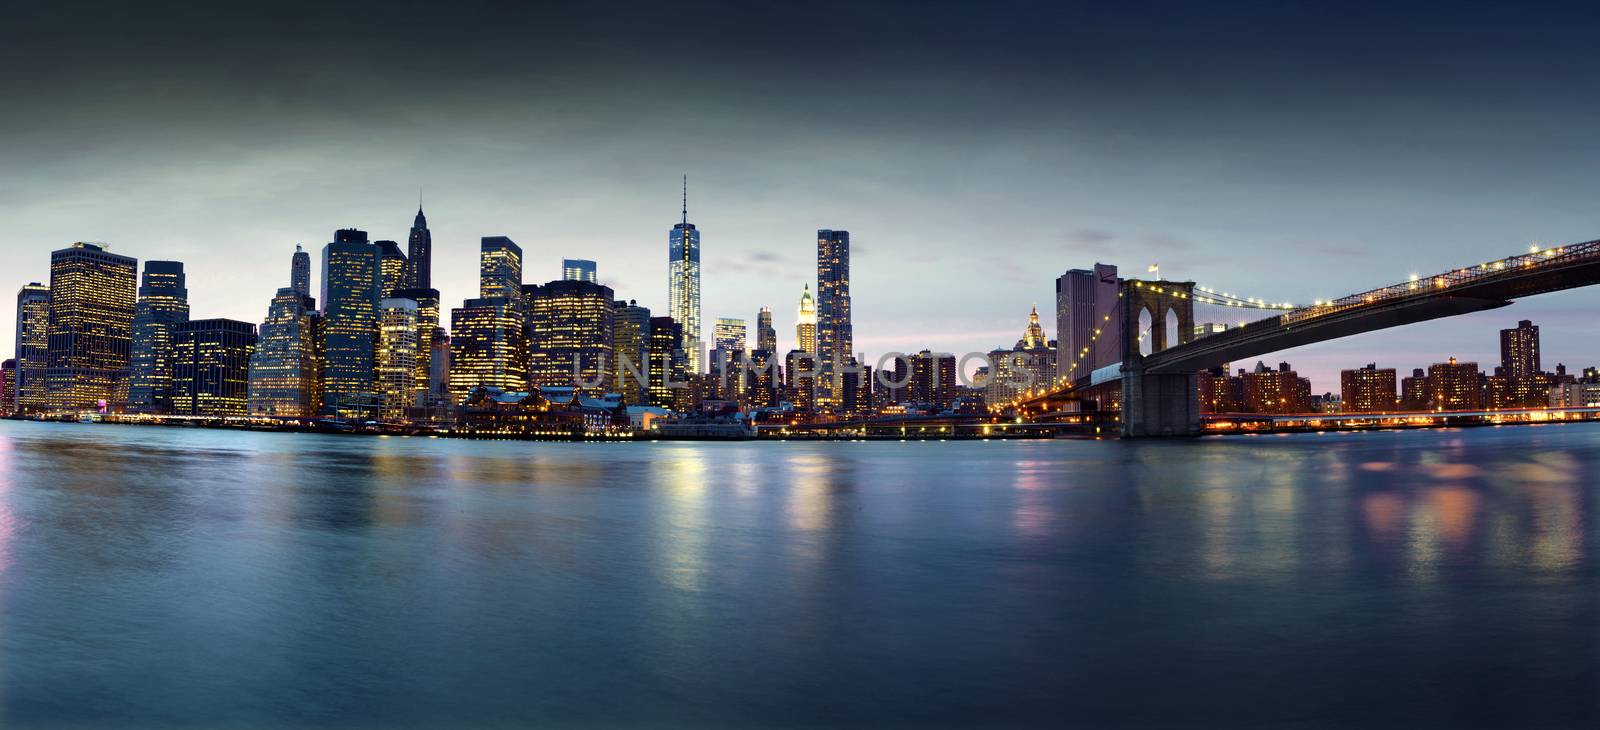 New York Skyline by Iko